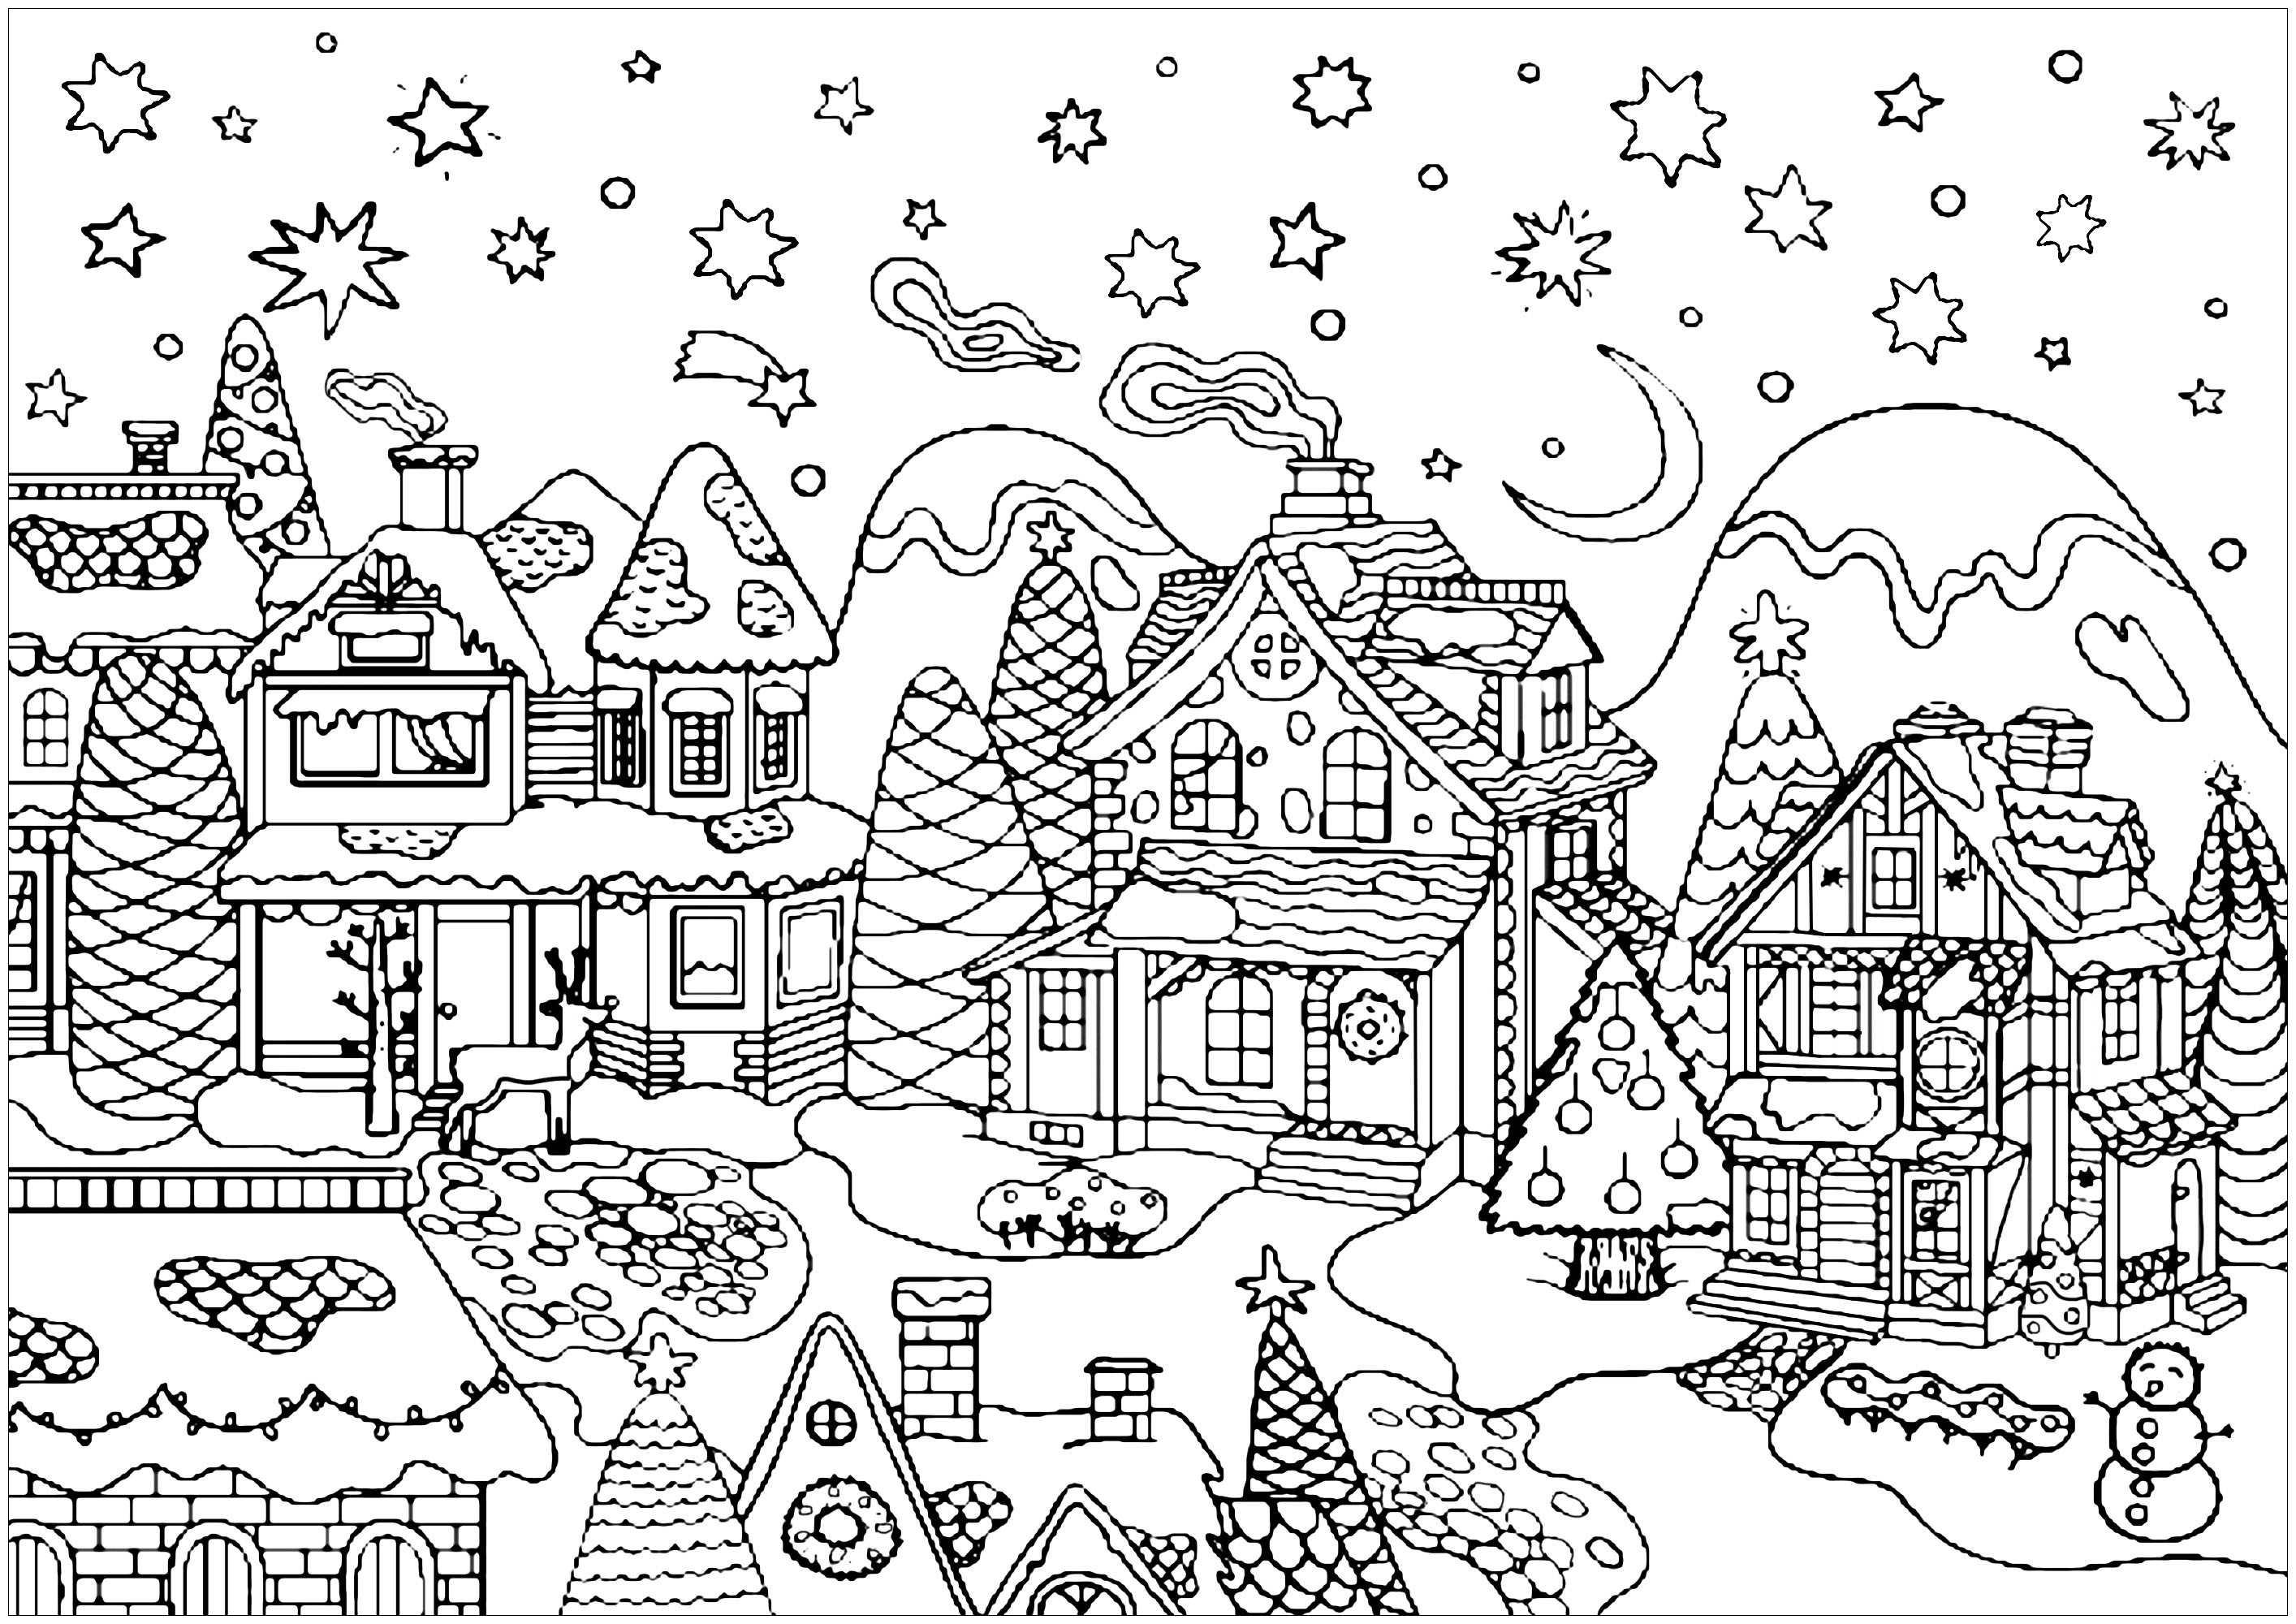 Colorea todas las bonitas casas de este bonito pueblo nevado listo para celebrar la Navidad.